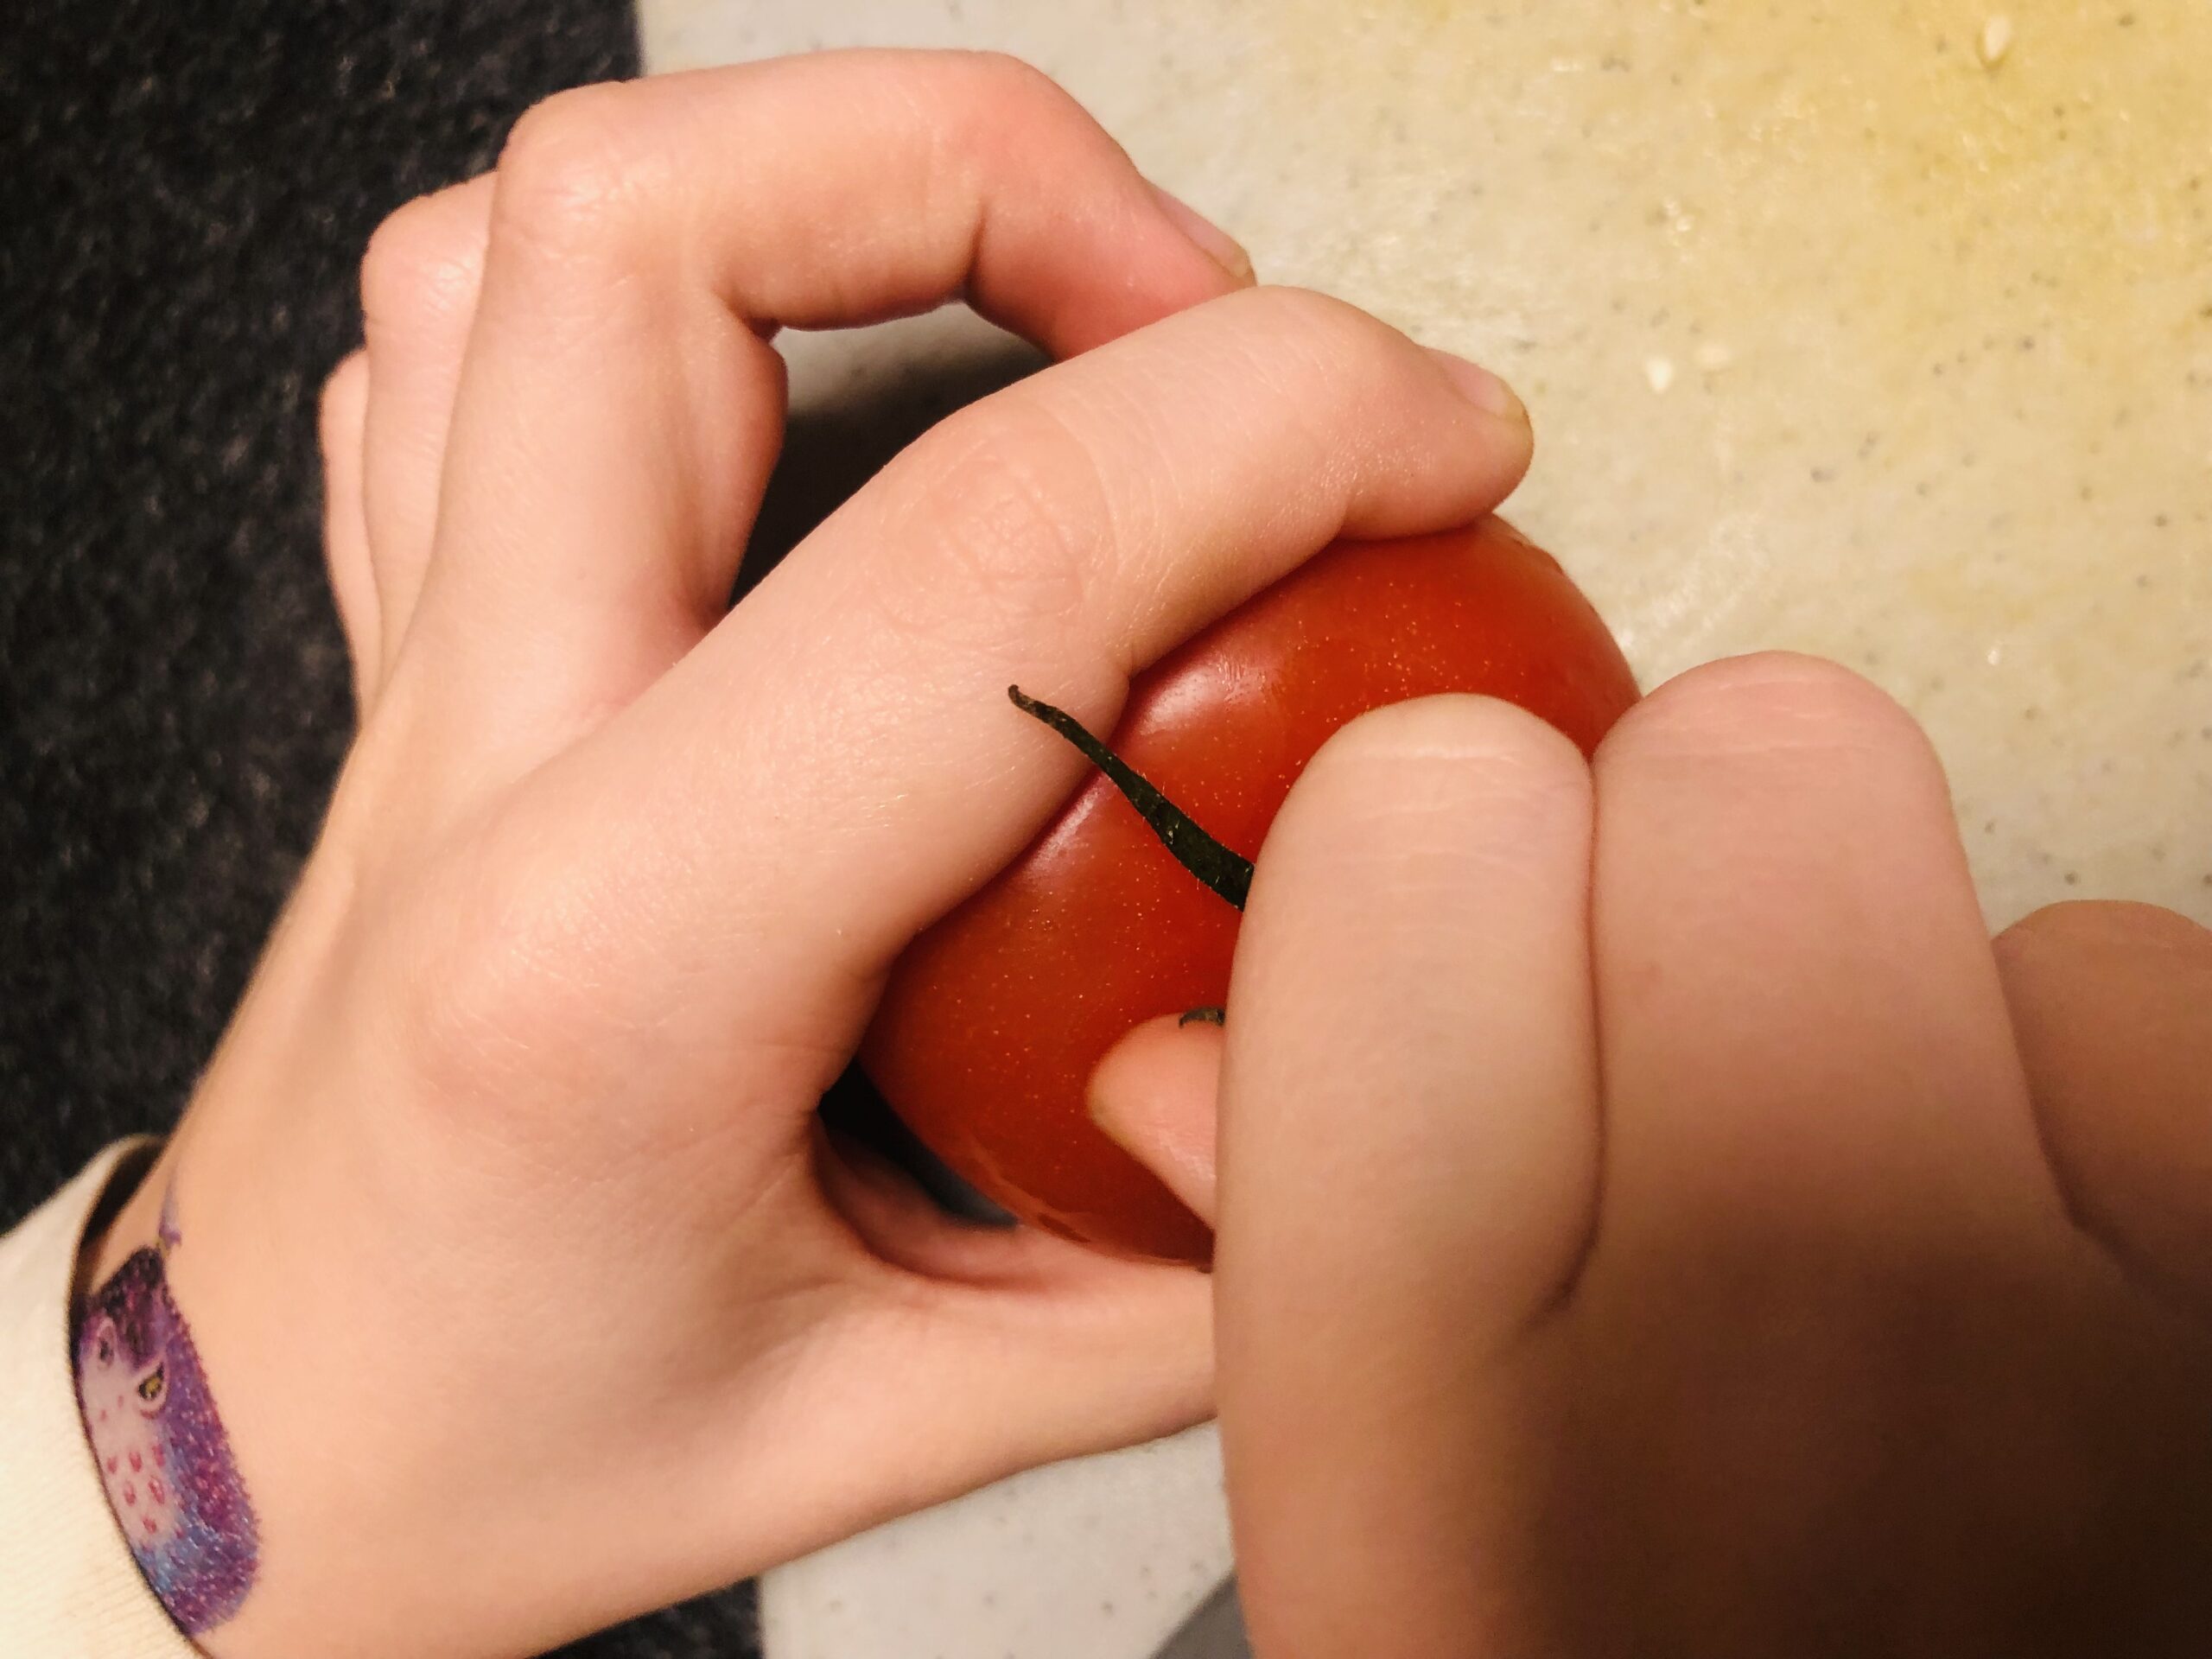 Bild zum Schritt 10 für das Bastel- und DIY-Abenteuer für Kinder: 'Jetzt löst ihr den grünen Strunk aus der Tomate.'